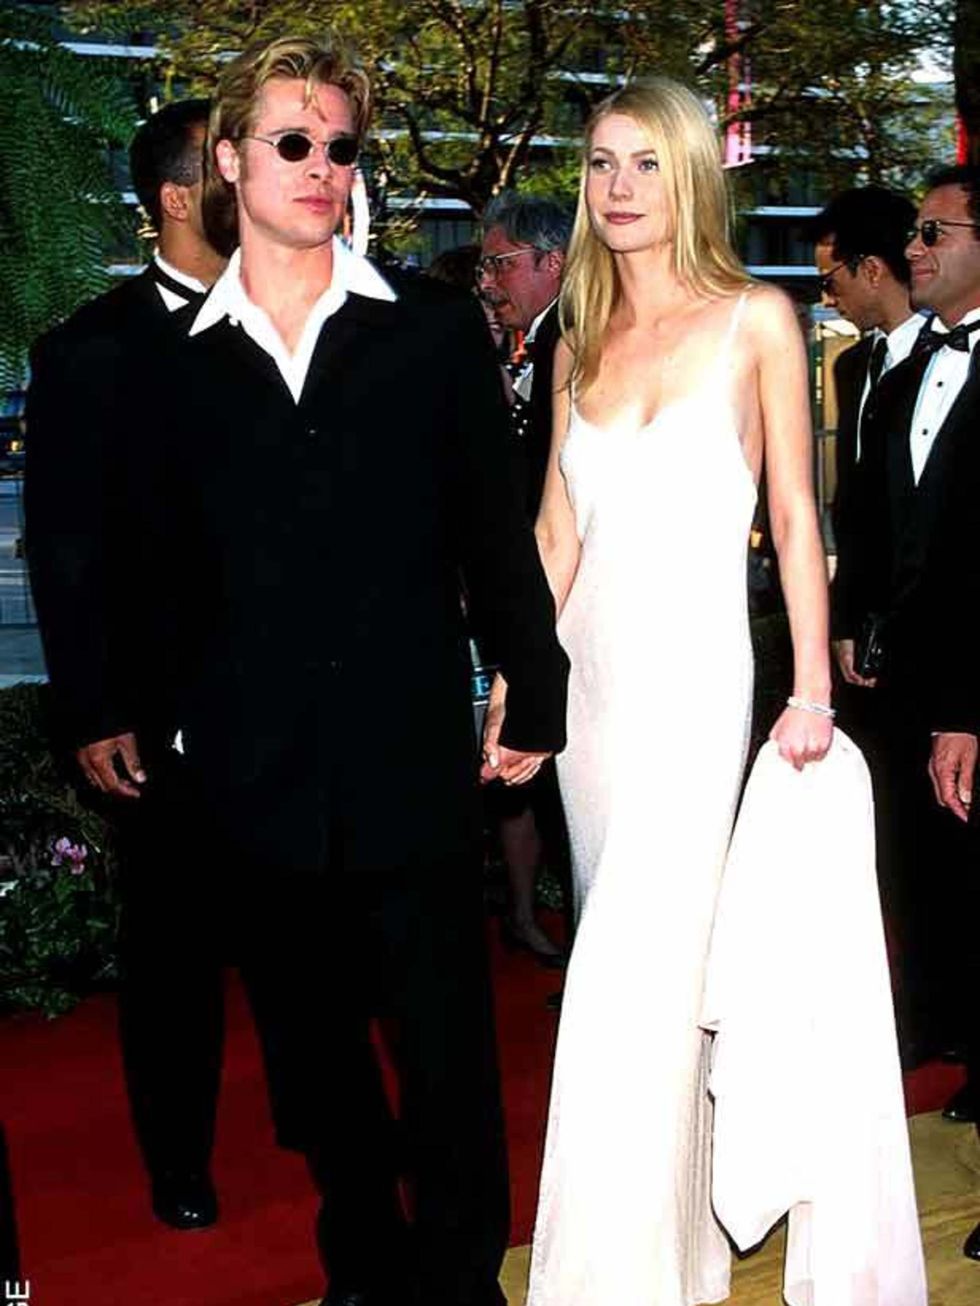 Brad Pitt & Gwyneth Paltrow at the 68th Annual Academy Award, 25 March 1996 